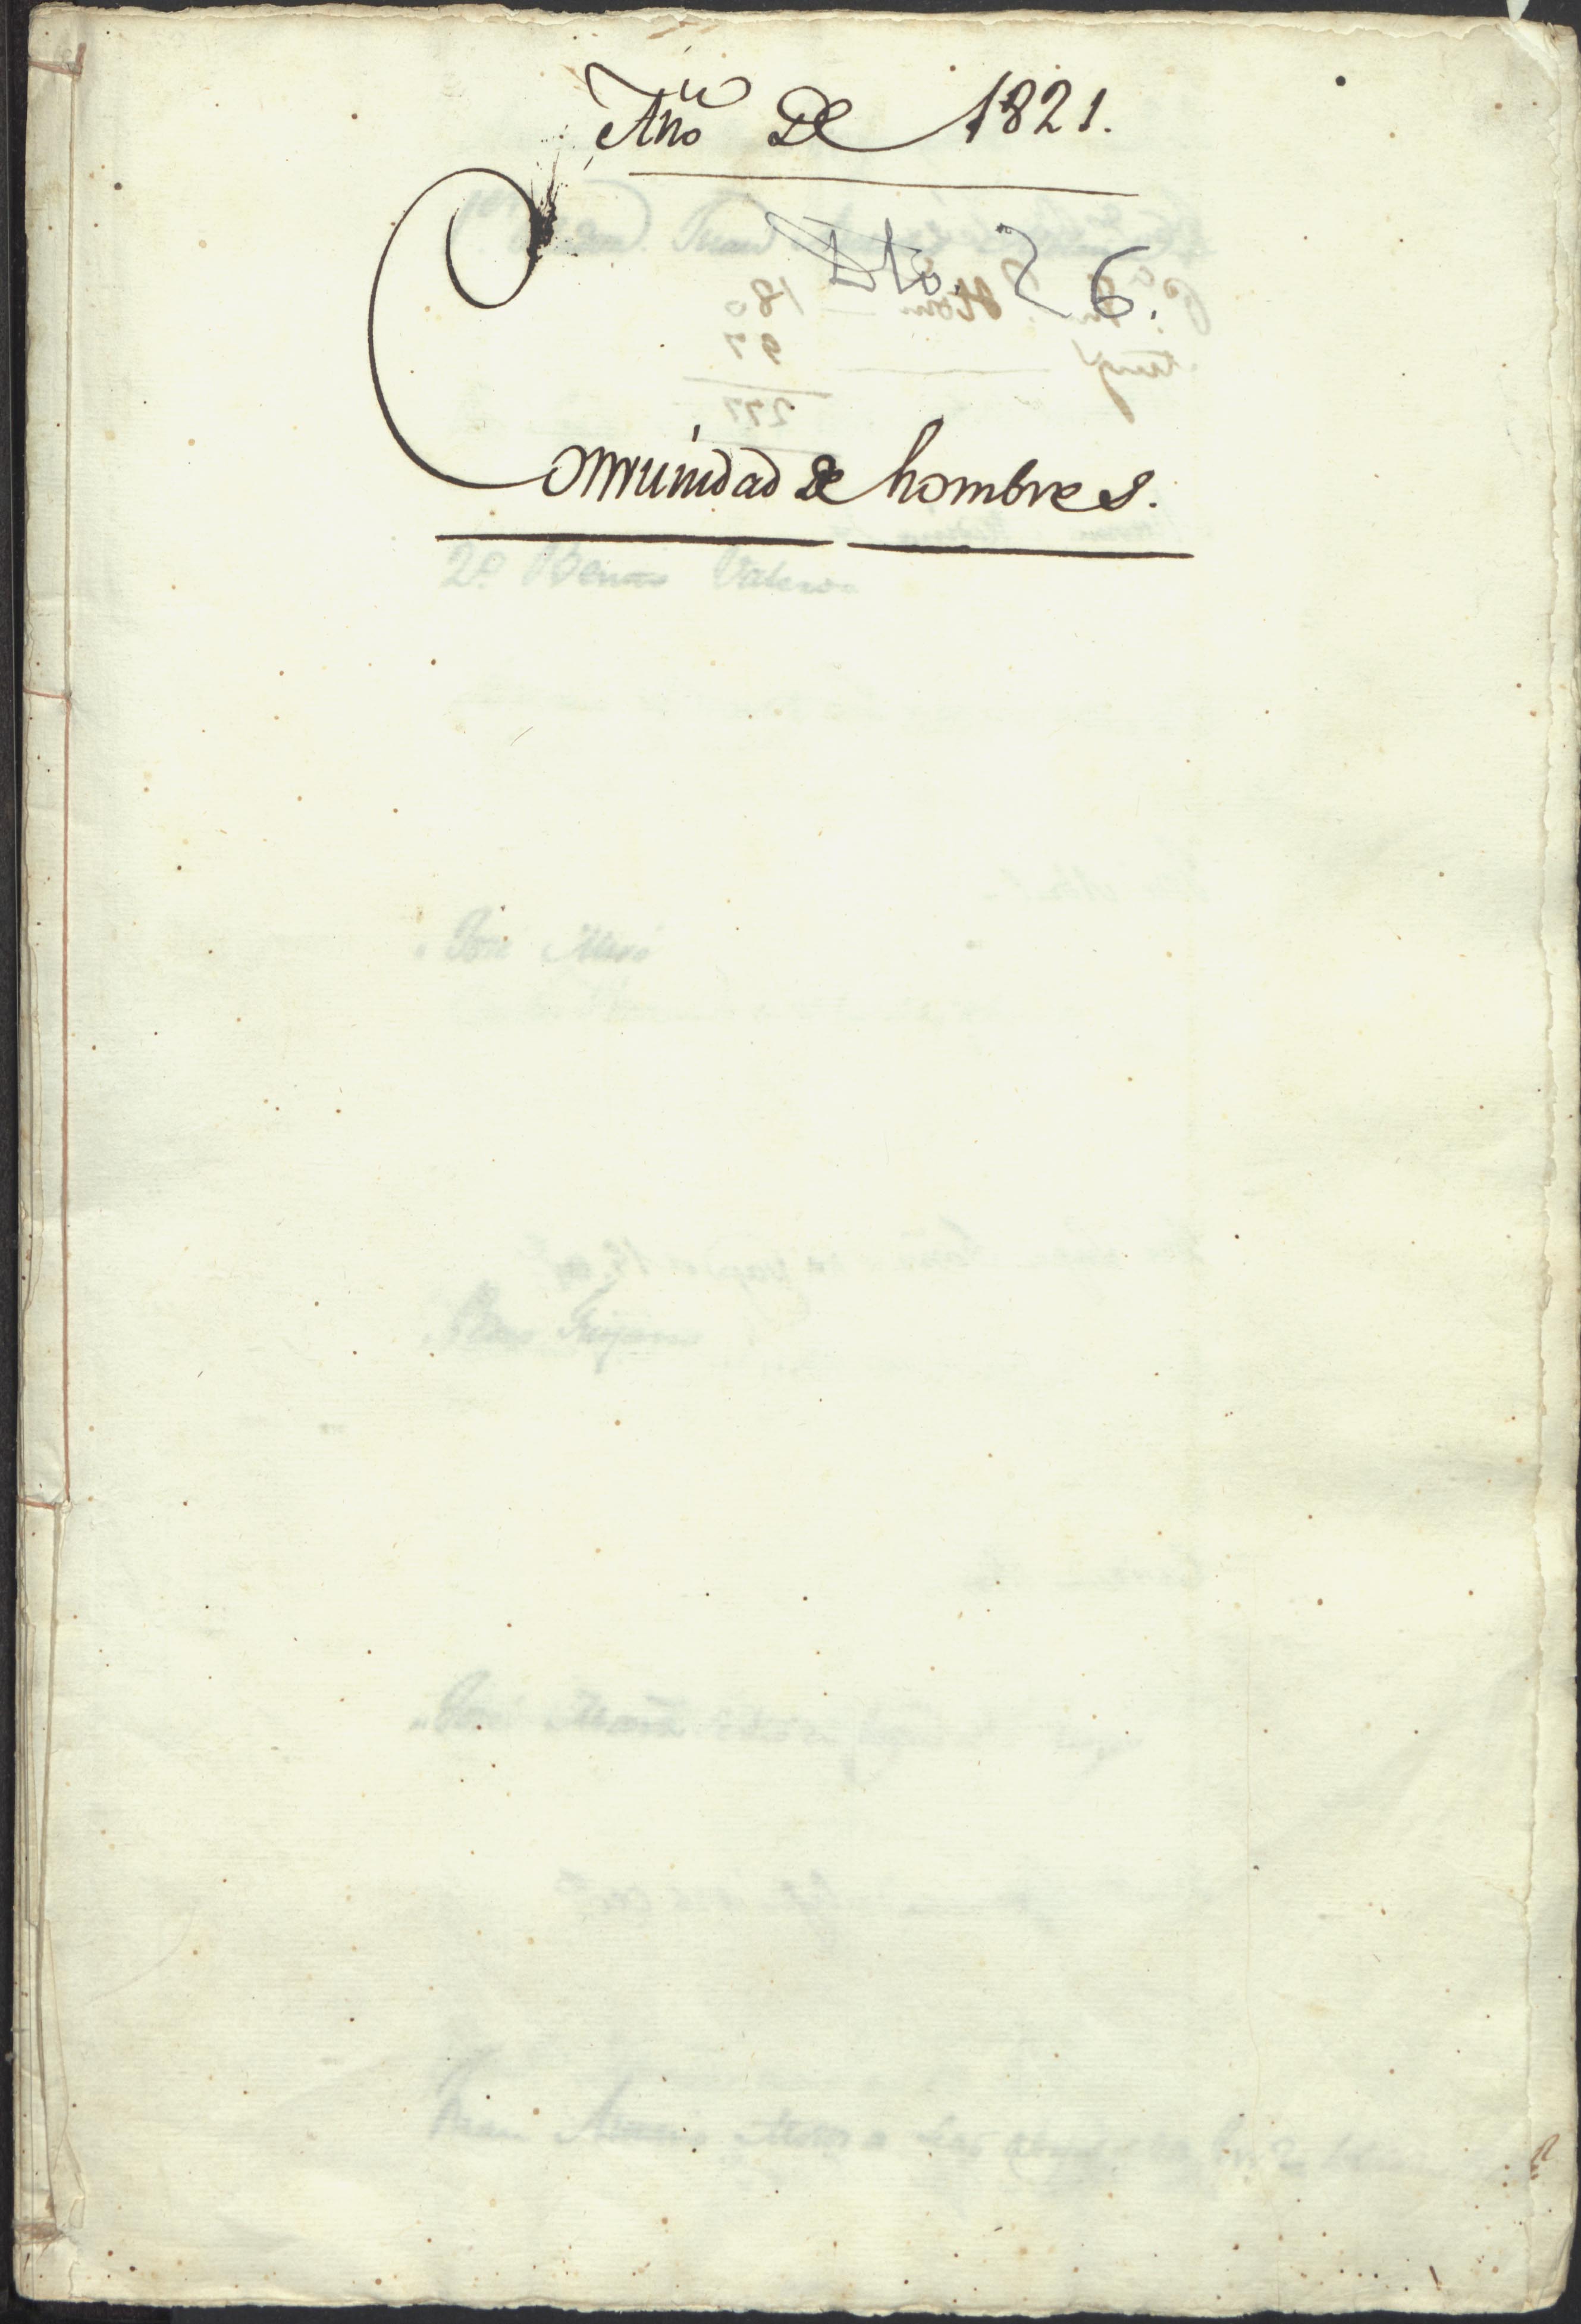 Cuaderno de filiaciones de hombres de la Casa de Misericordia.